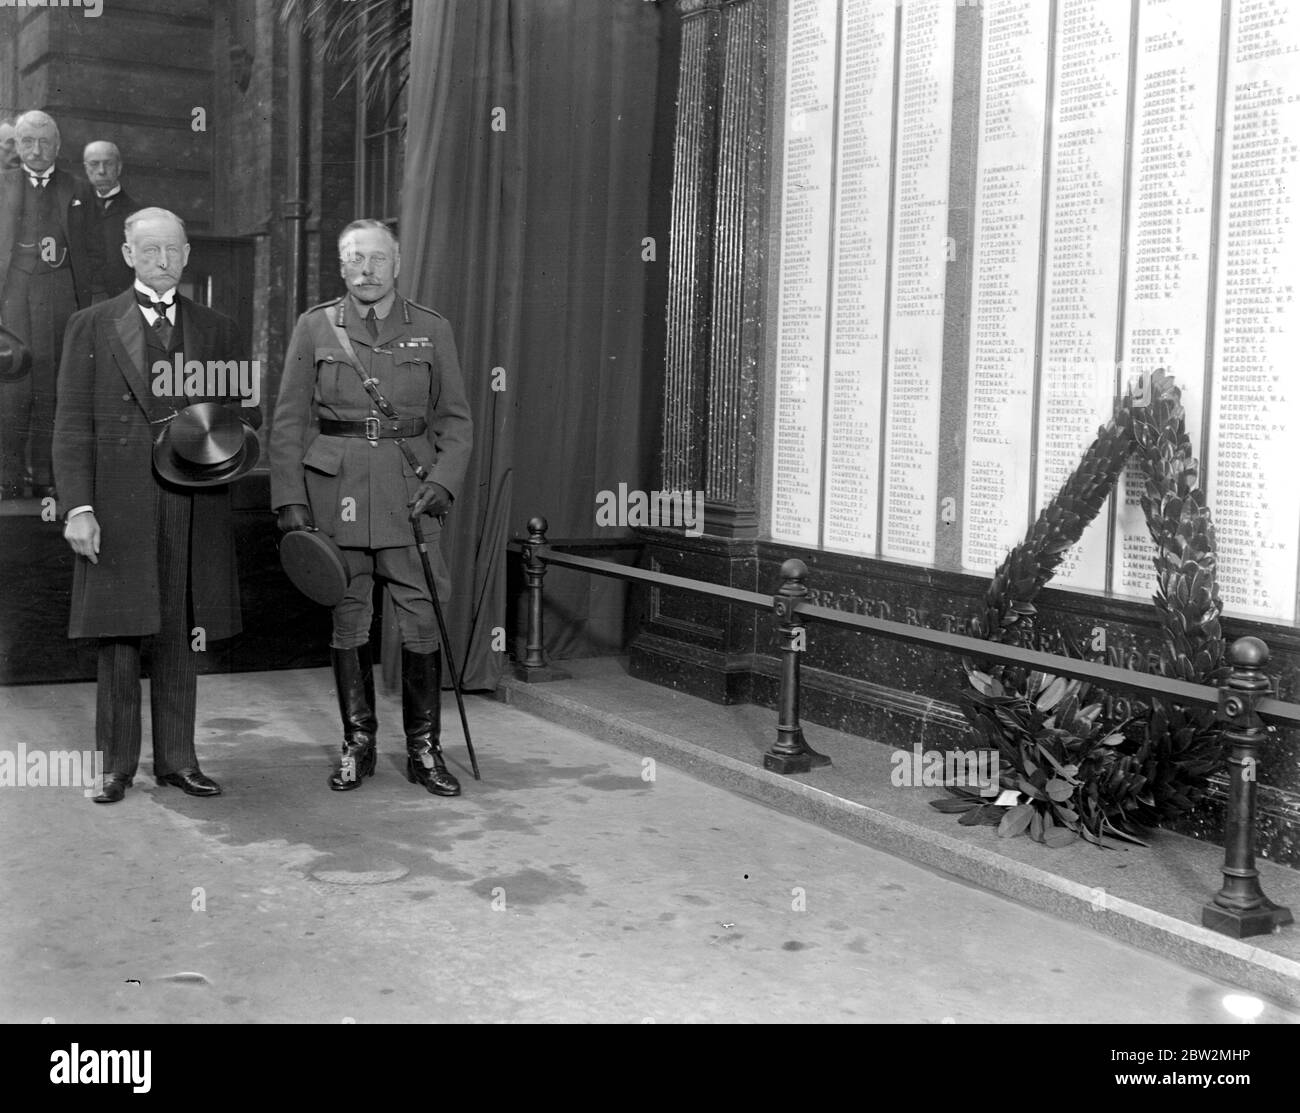 Lord Haig enthüllt Denkmal für G.B.R. Männer am King's Cross mit Sir Fredrick Banbury. Haig, Douglas (1. Earl Haig) britischer General und Marschall; führte britische Armeen in Frankreich im Ersten Weltkrieg 1915-1918  1861-1928 Stockfoto